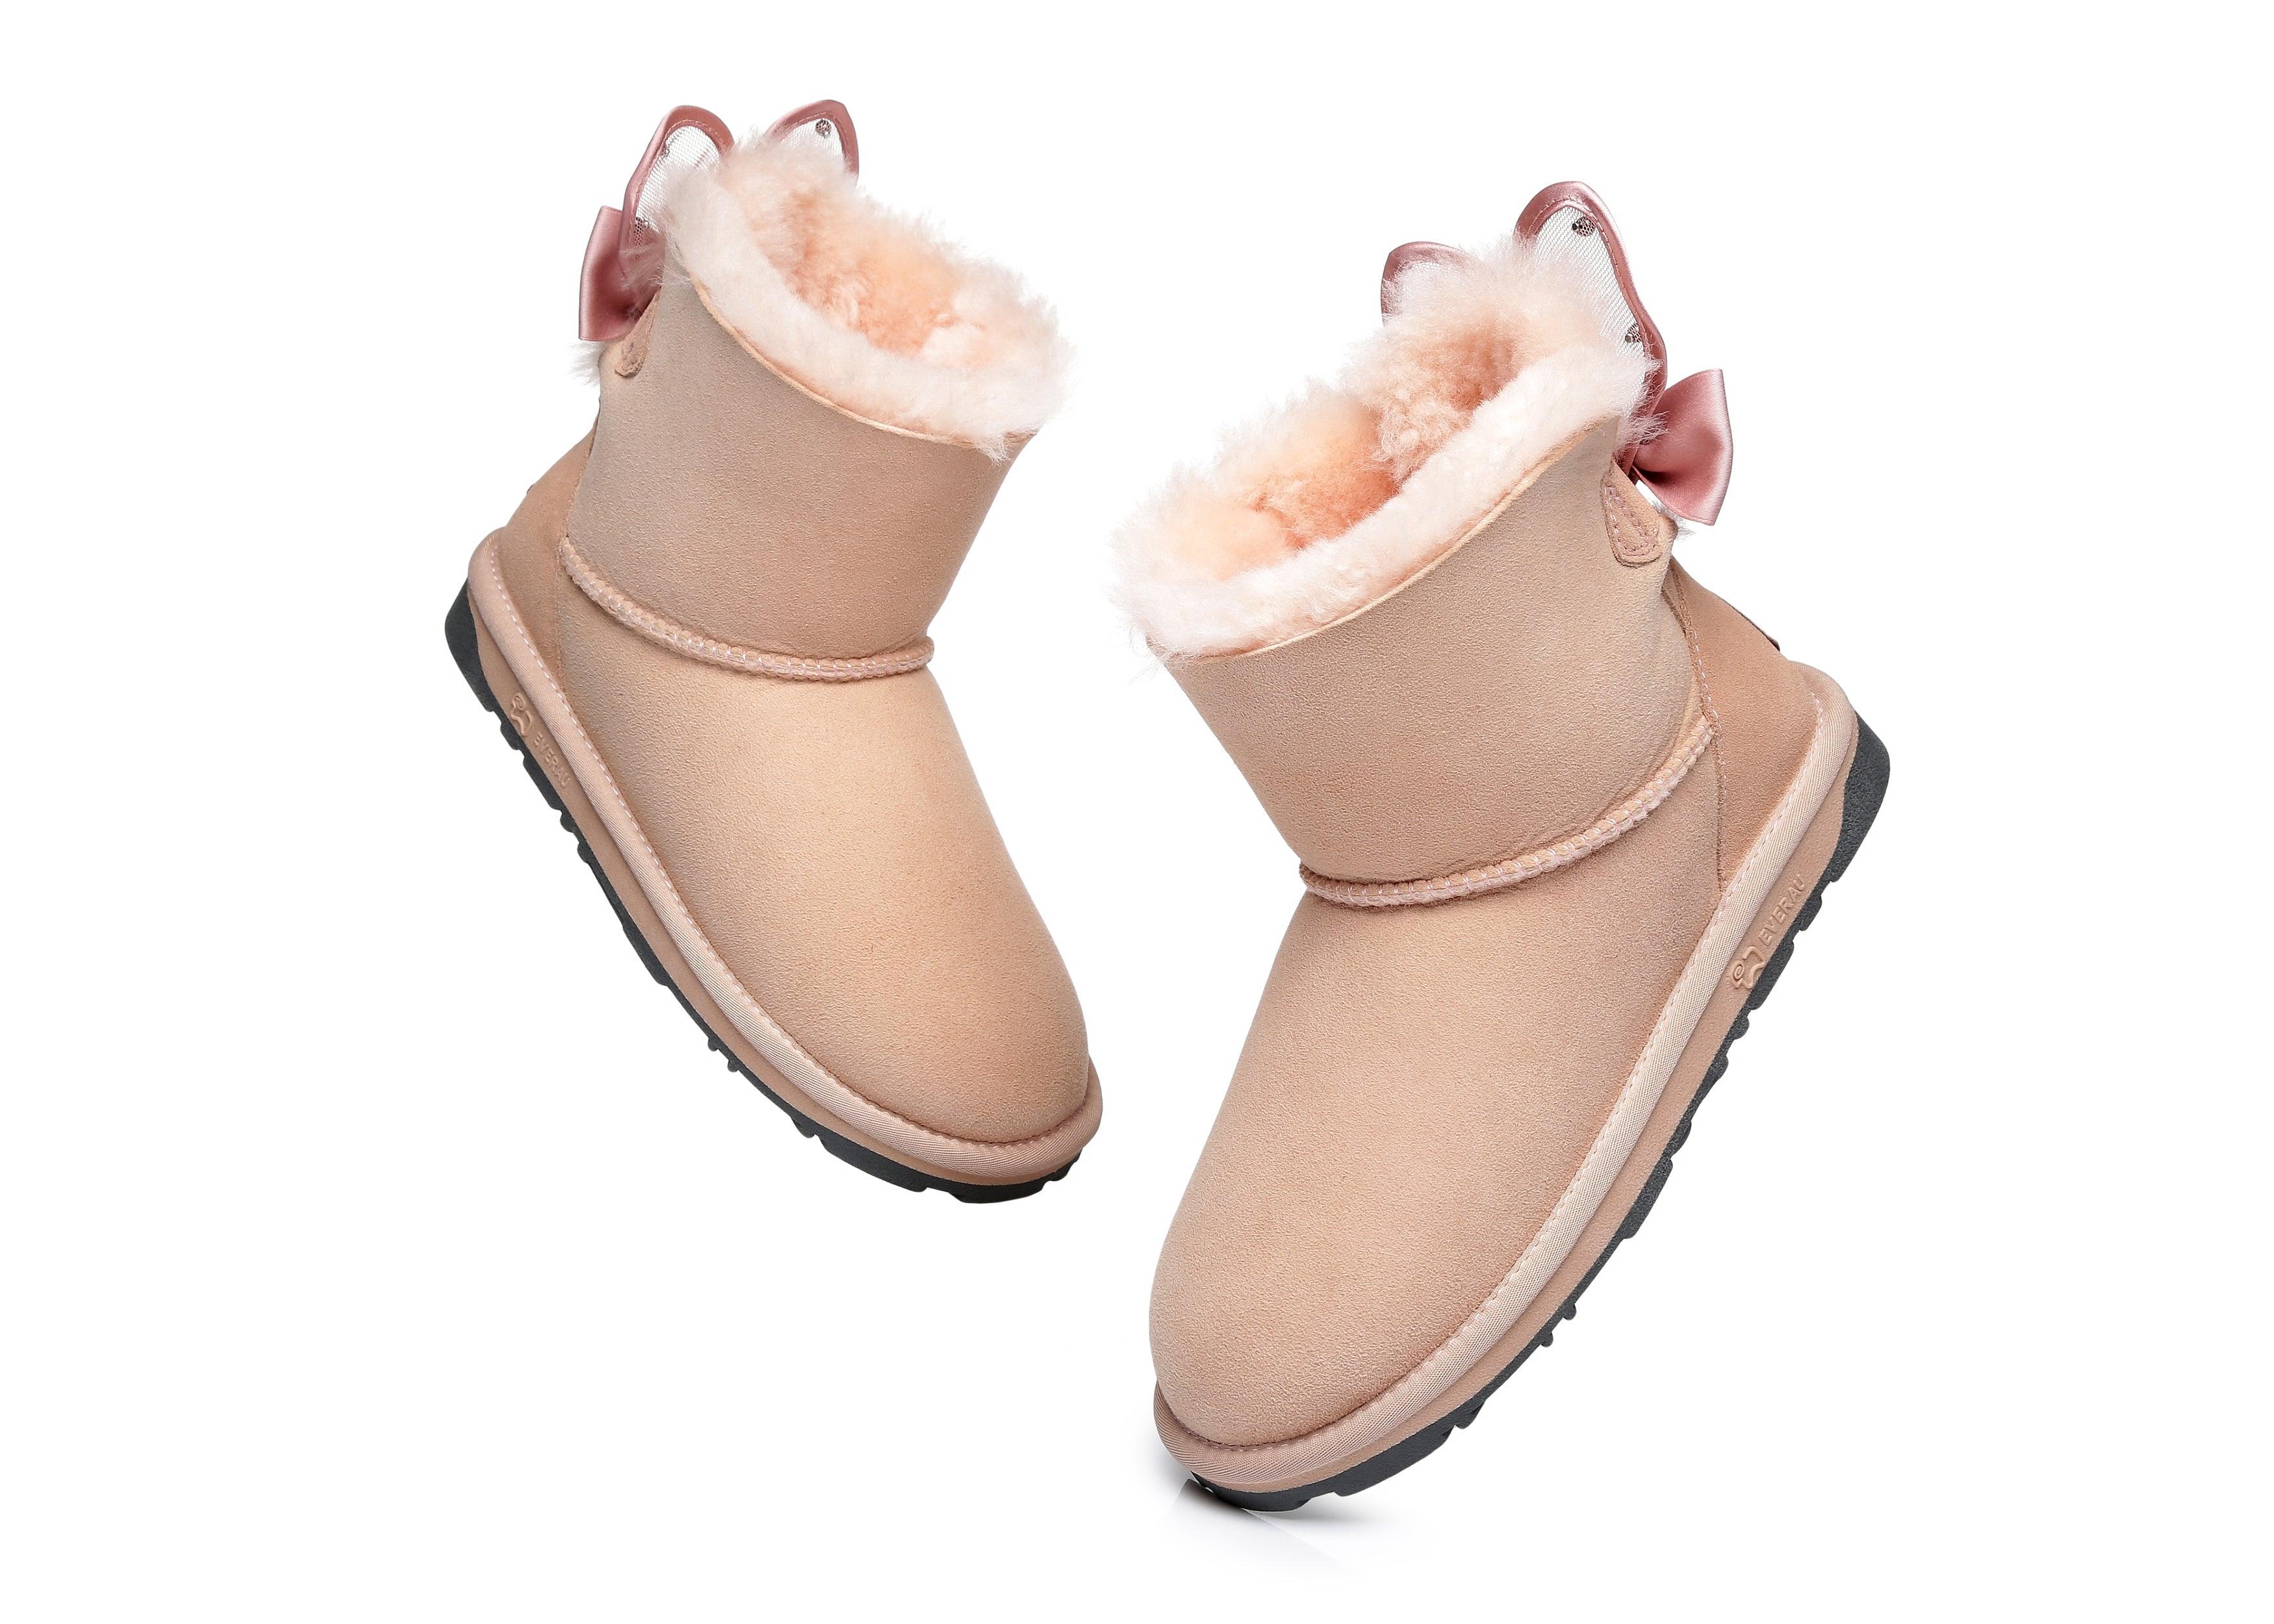 EVERAU® Mini Single Bow Women Wabbit Boots - UGG Boots - Pink - AU Ladies 4 / AU Men 2 / EU 35 - Uggoutlet